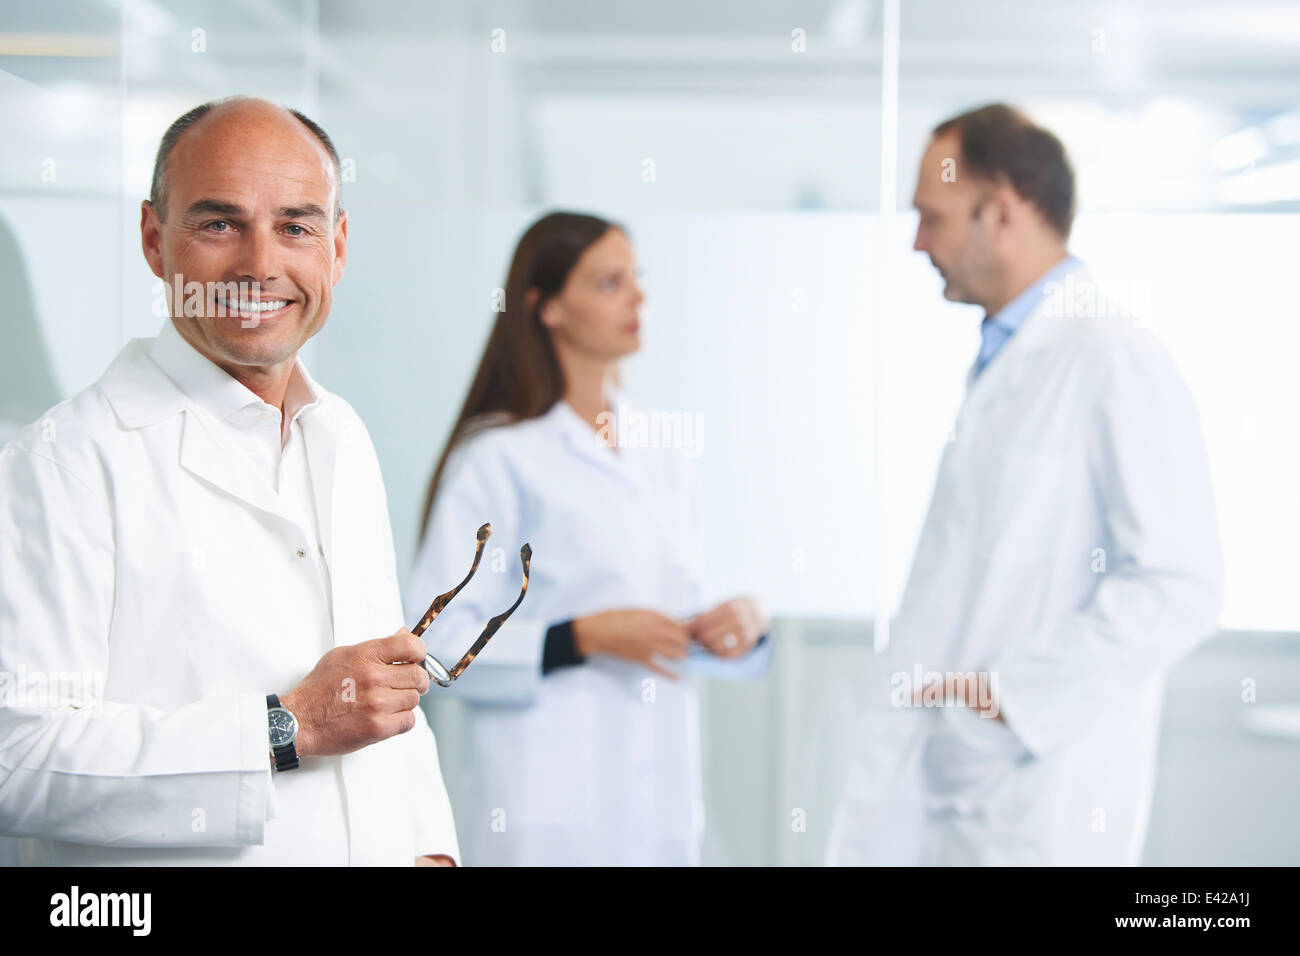 Medico maschio da parete riflettente, i colleghi in background Foto Stock